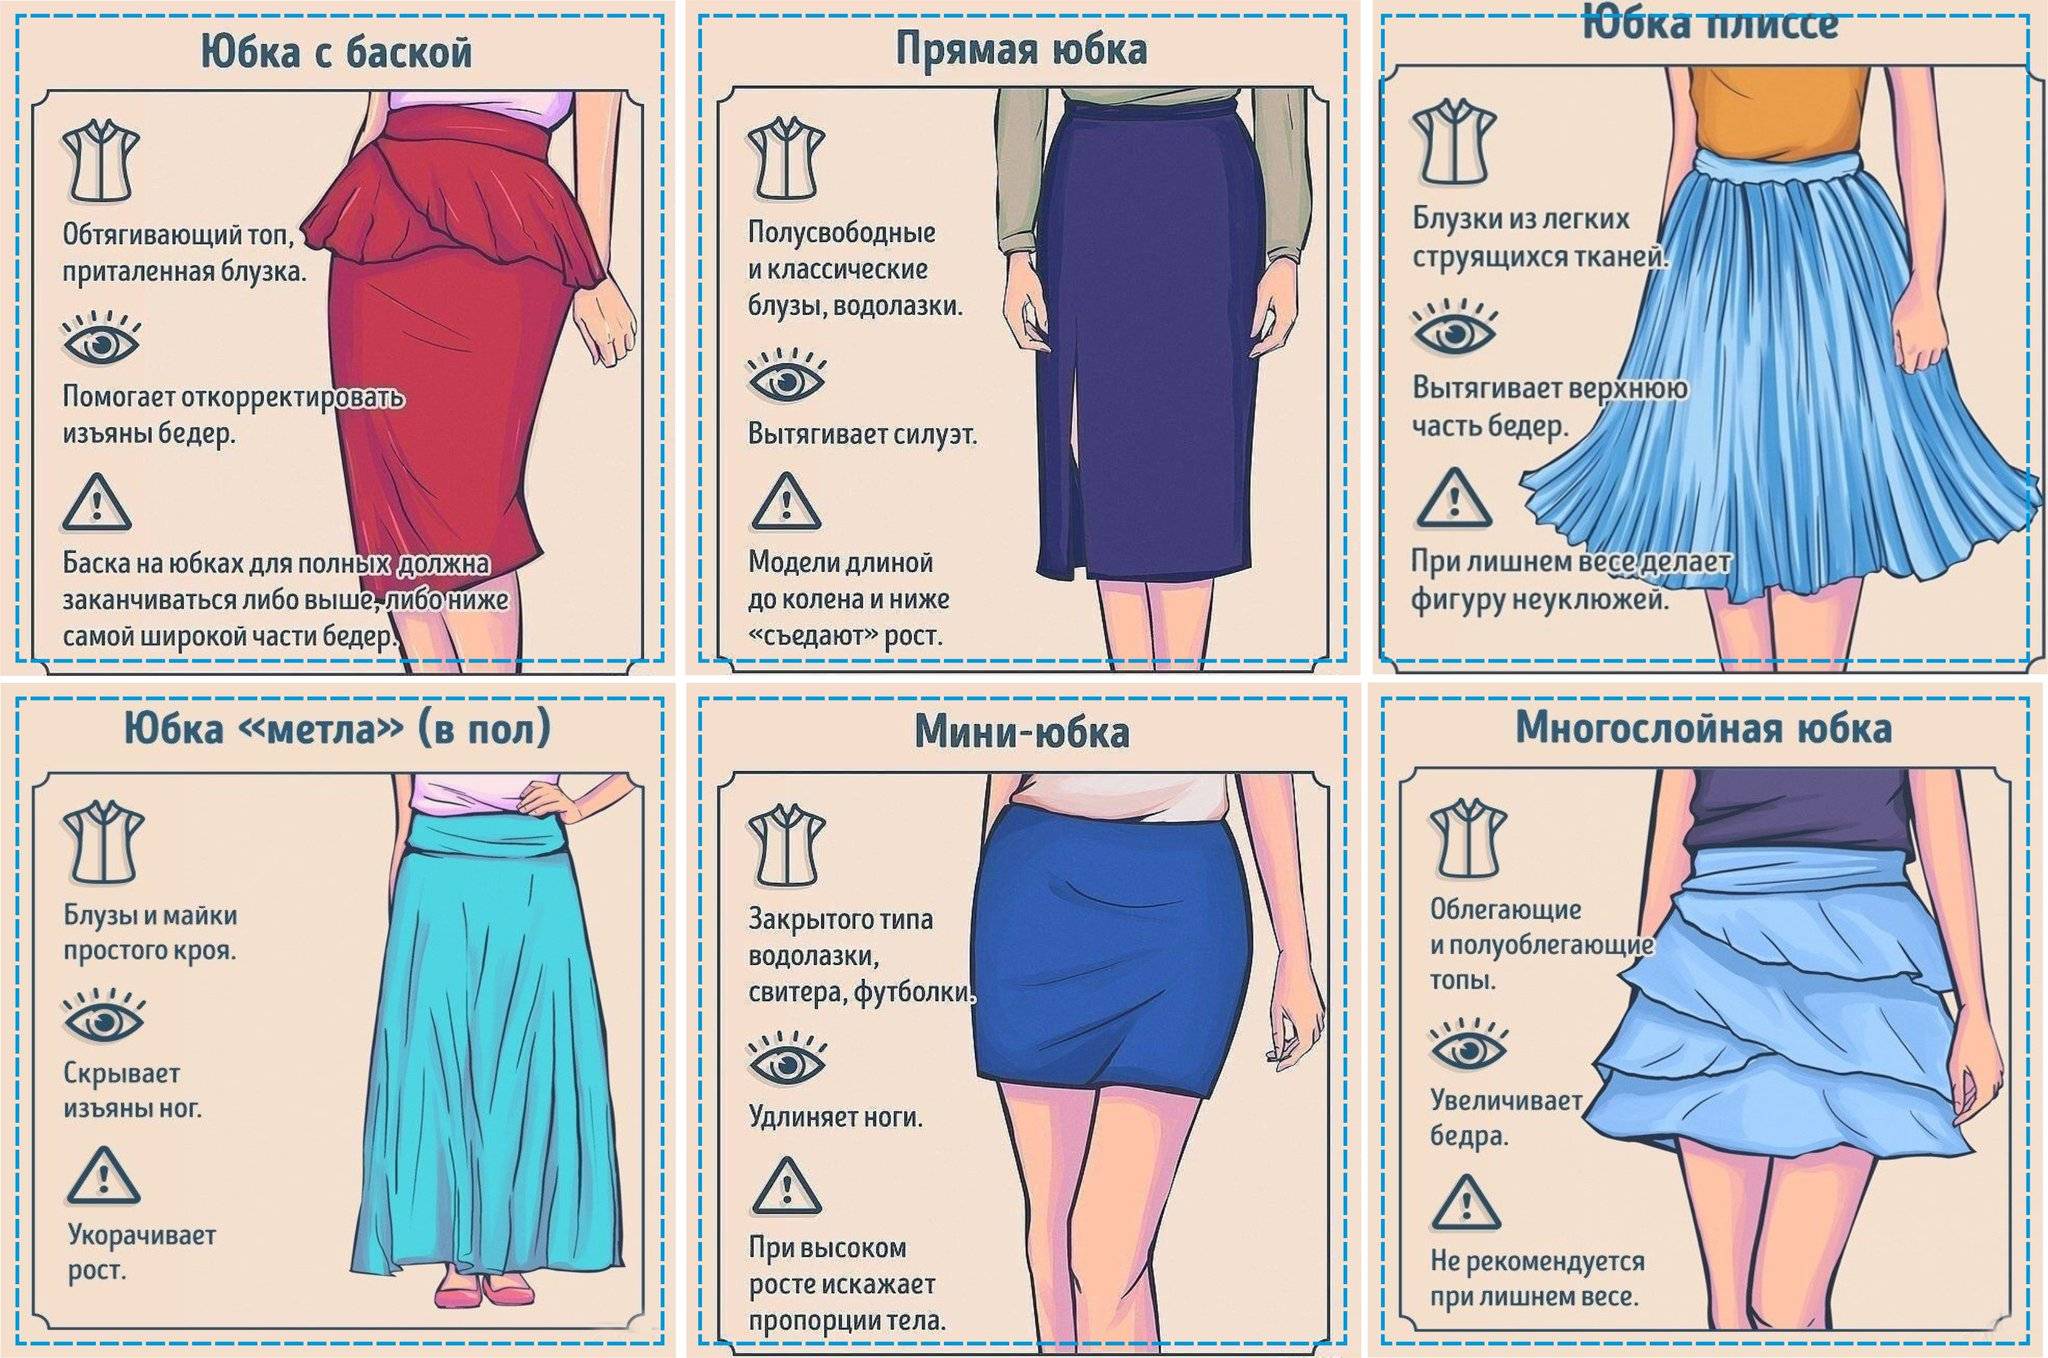 Мини-юбка, особенности, популярные разновидности, советы по сочетанию